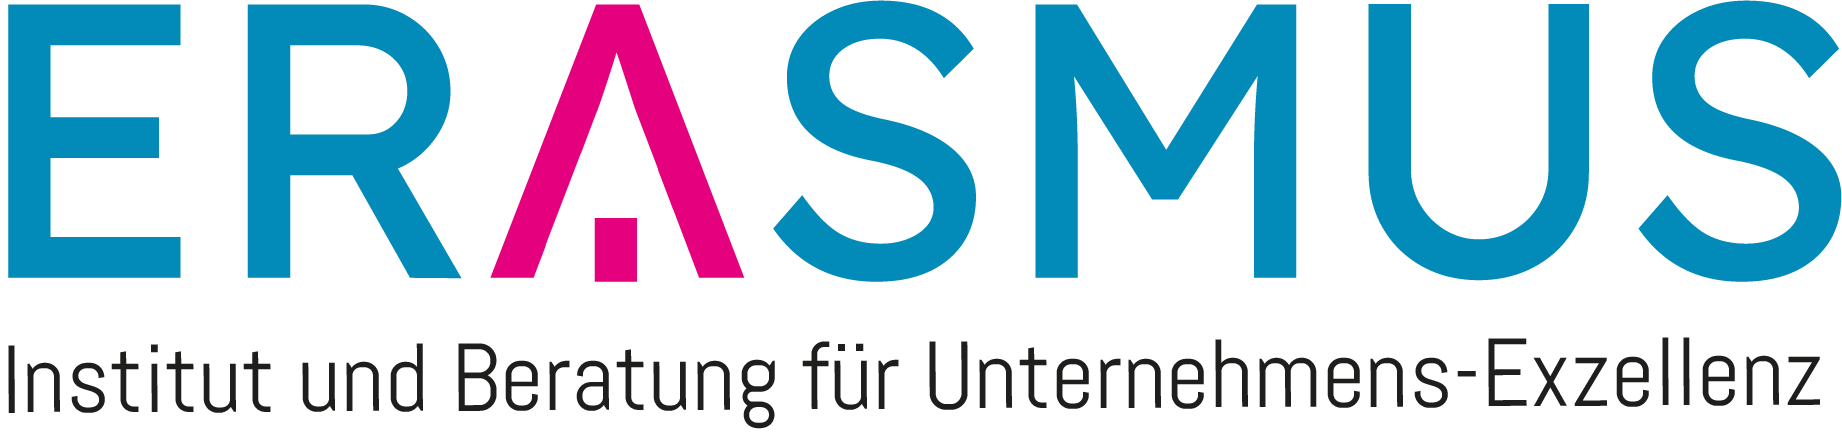 Logo Erasmus GmbH